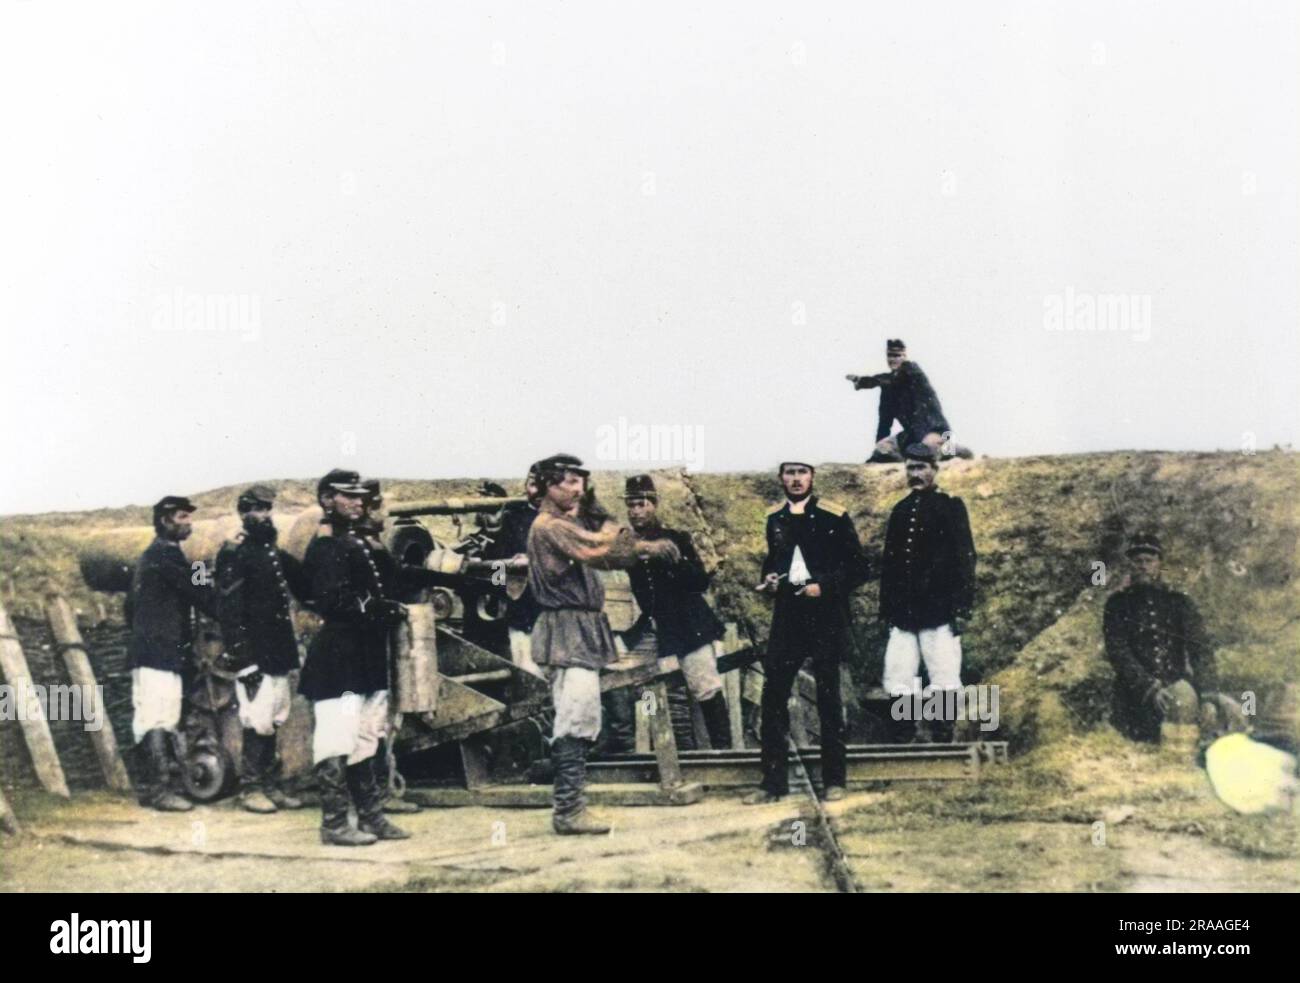 Ein russischer Mörser (Belagerungswaffe) und seine Besatzung während des russisch-türkischen Krieges (24. April 1877 û 3. März 1878). Datum: Ca. 1877 Stockfoto